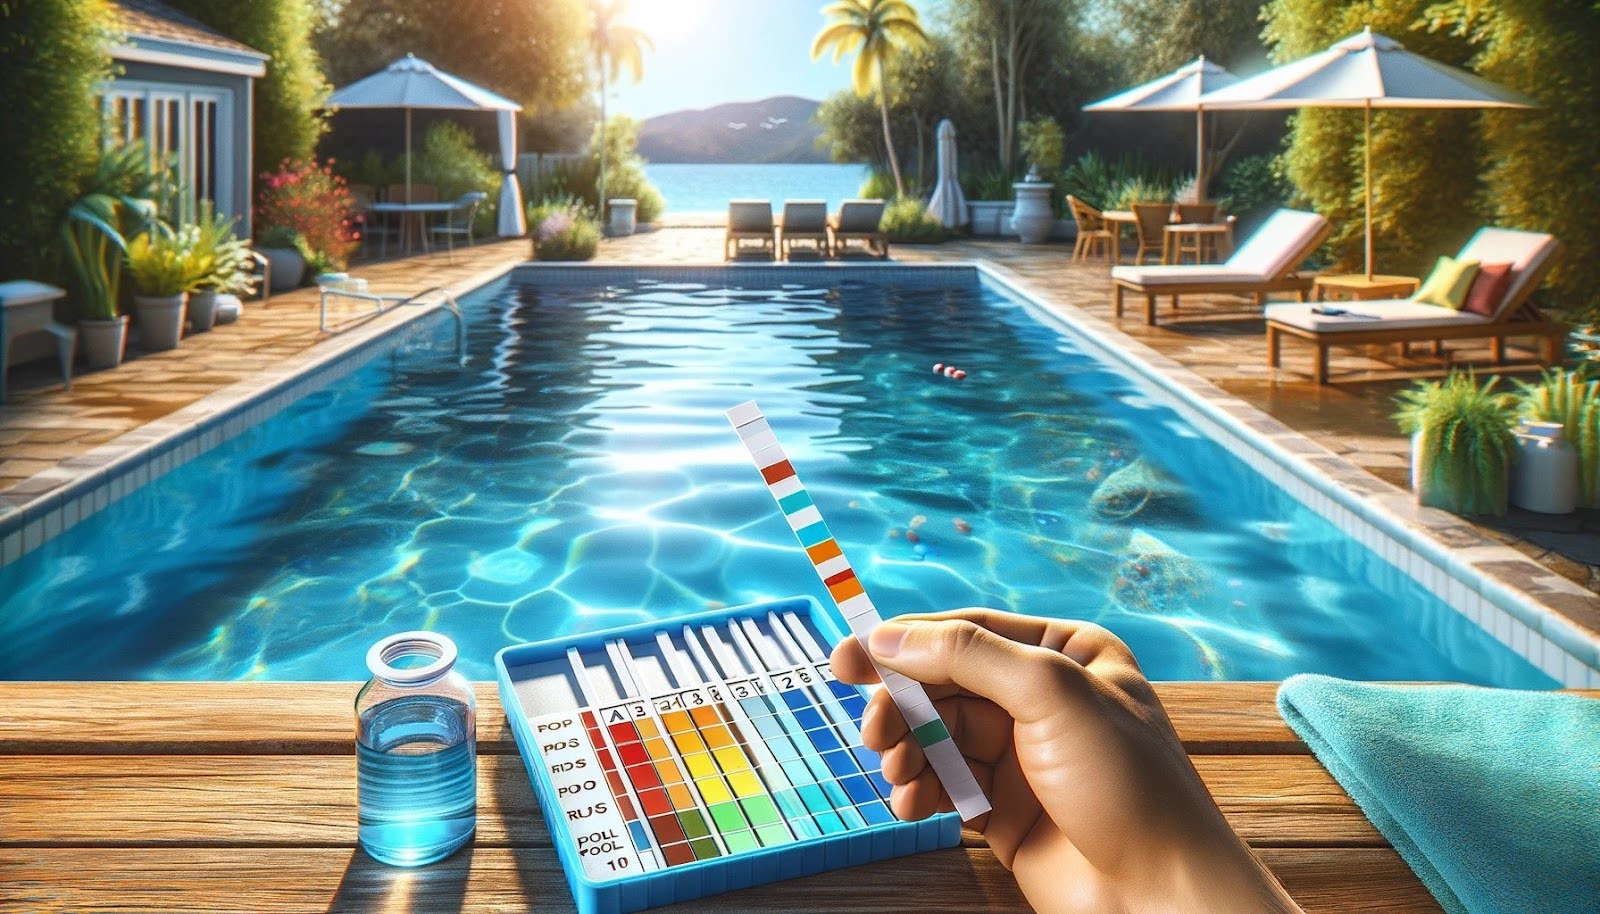 testovanie pH a chlóru v bazéne pomocou testovacích prúžkov